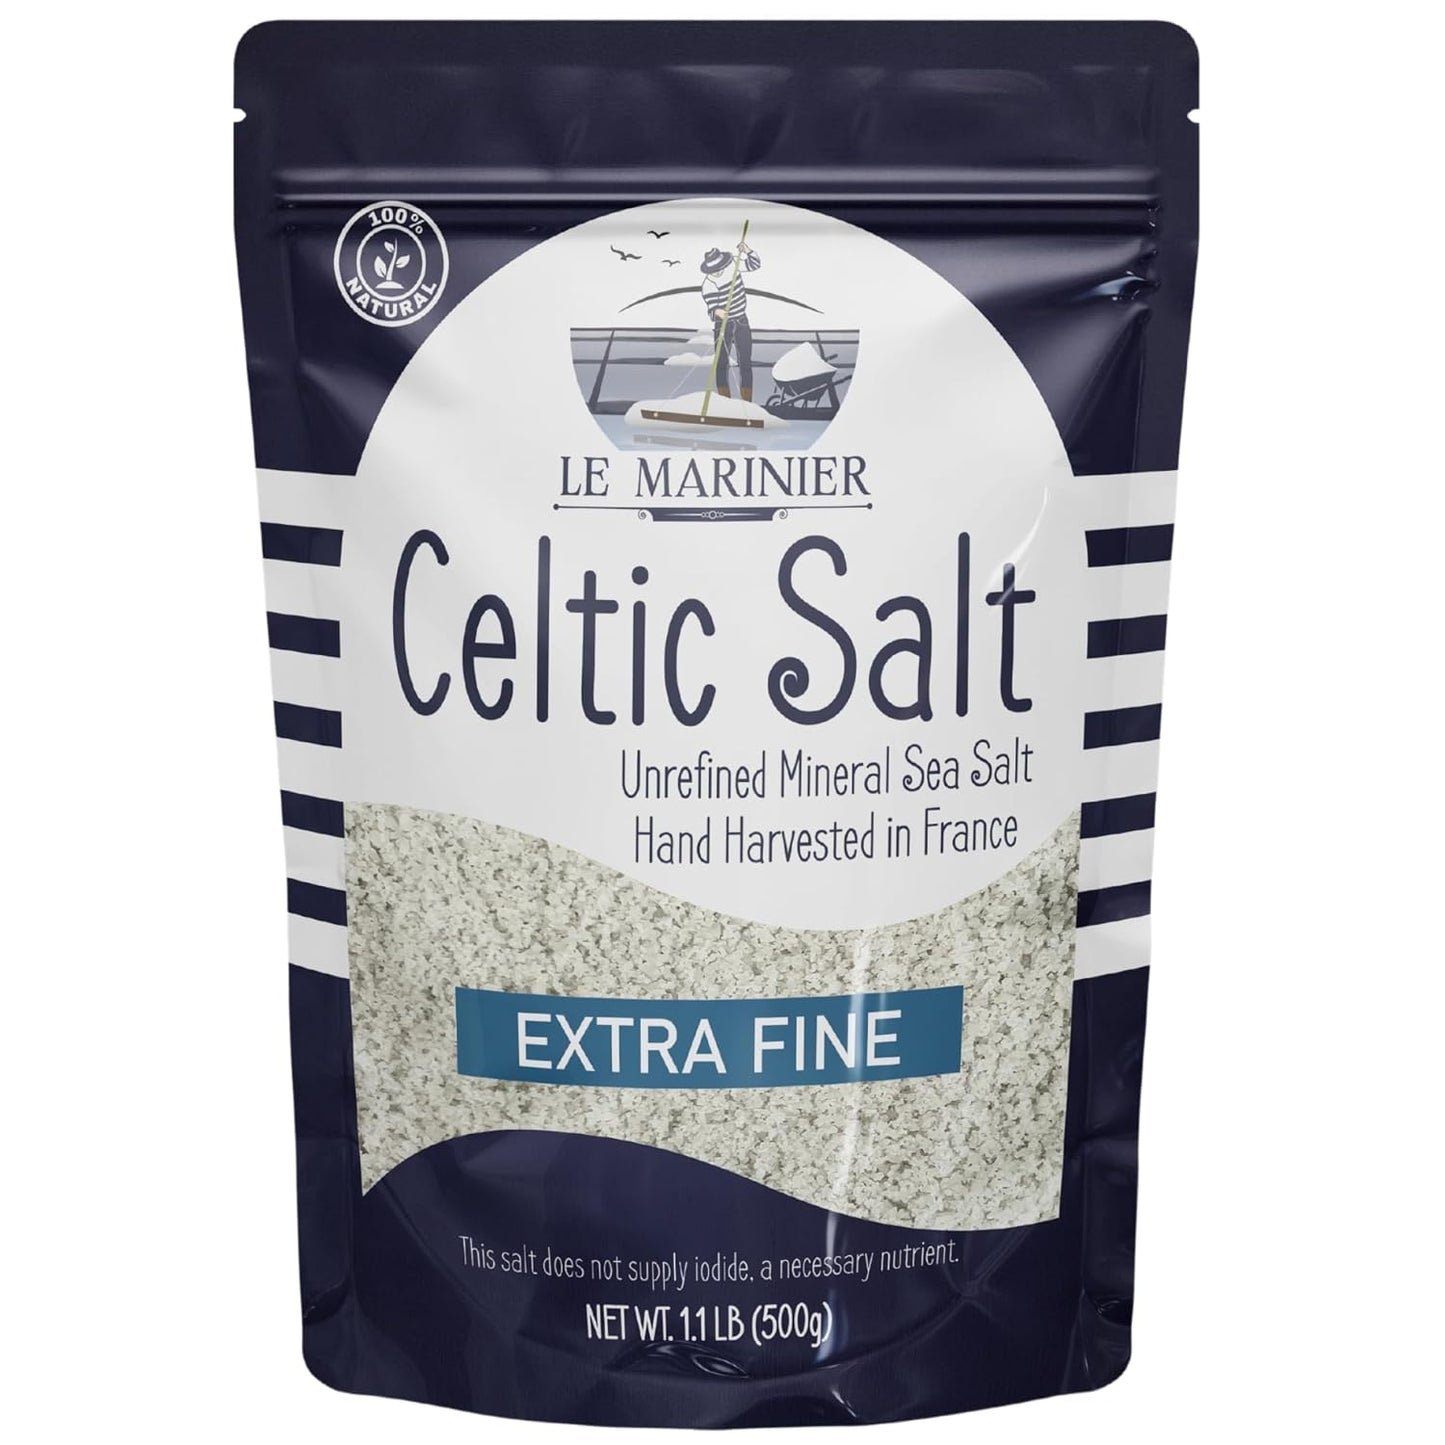 Le Marinier Celtic Salt Extra Fine - 1.1lb / 500g